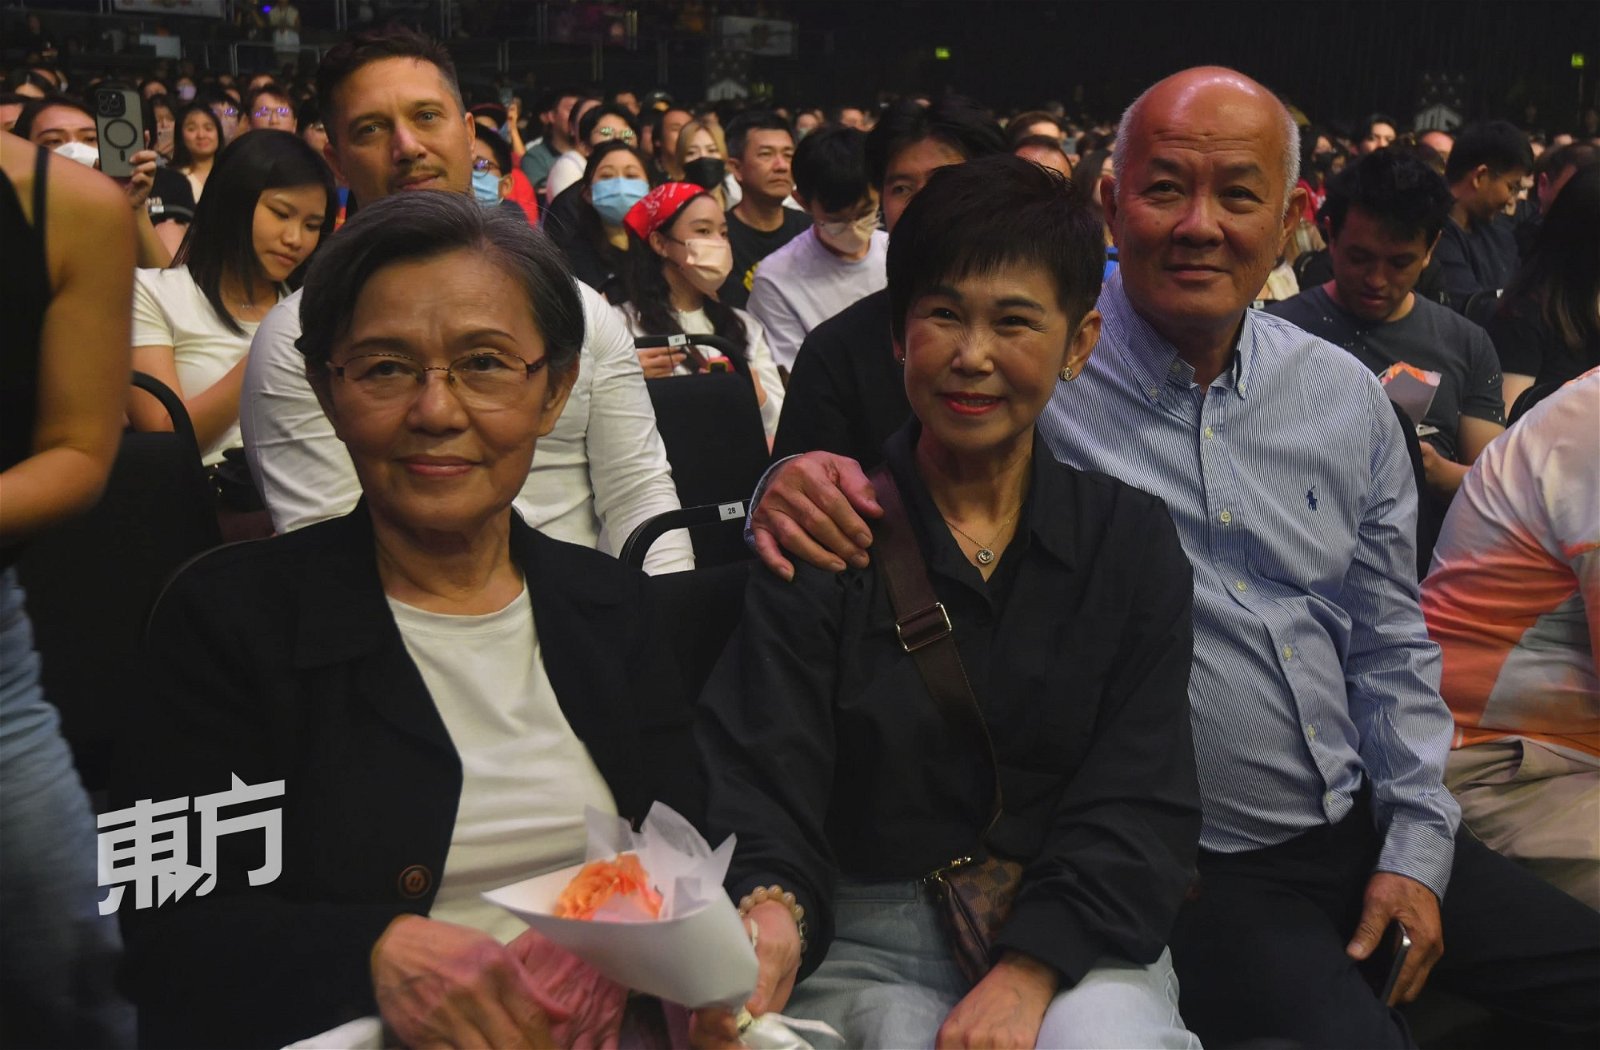 李佳薇老师、妈妈以及爸爸到现场支持李佳薇。